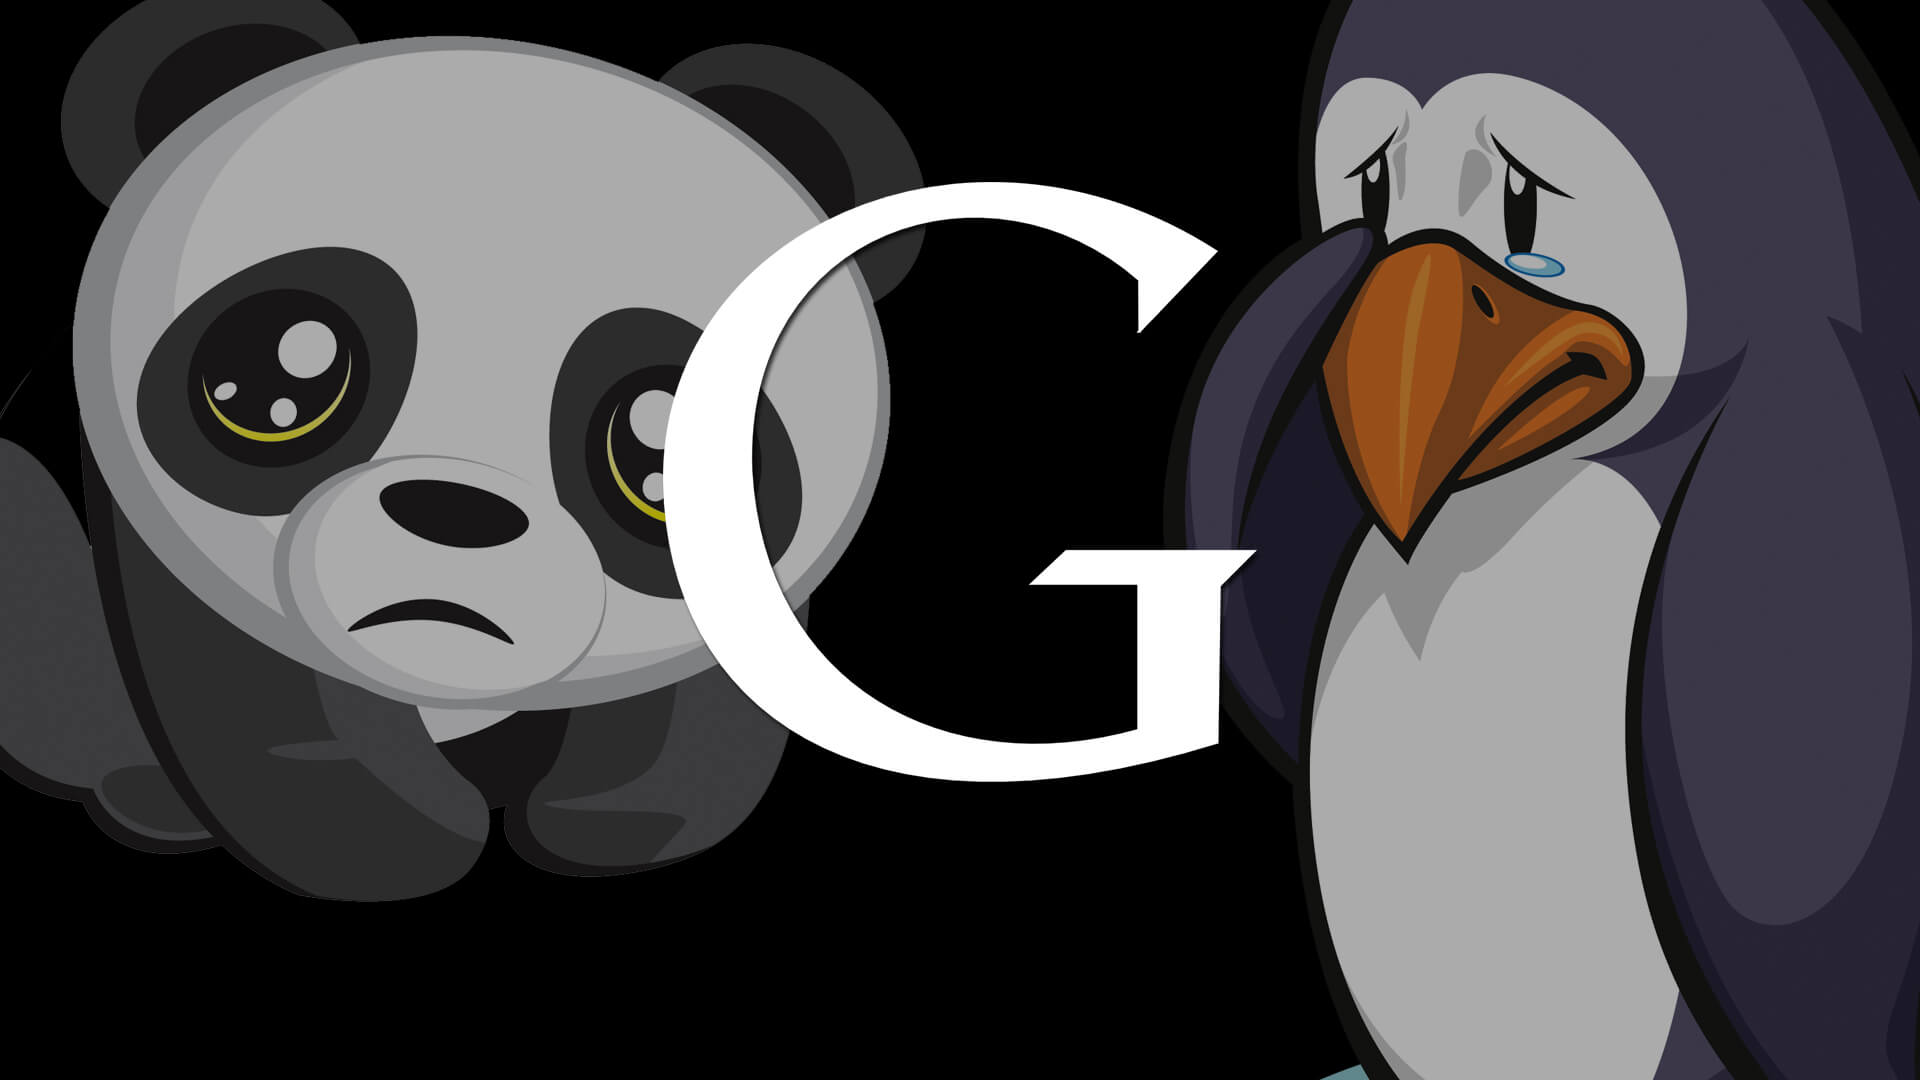 Panda and Penguin